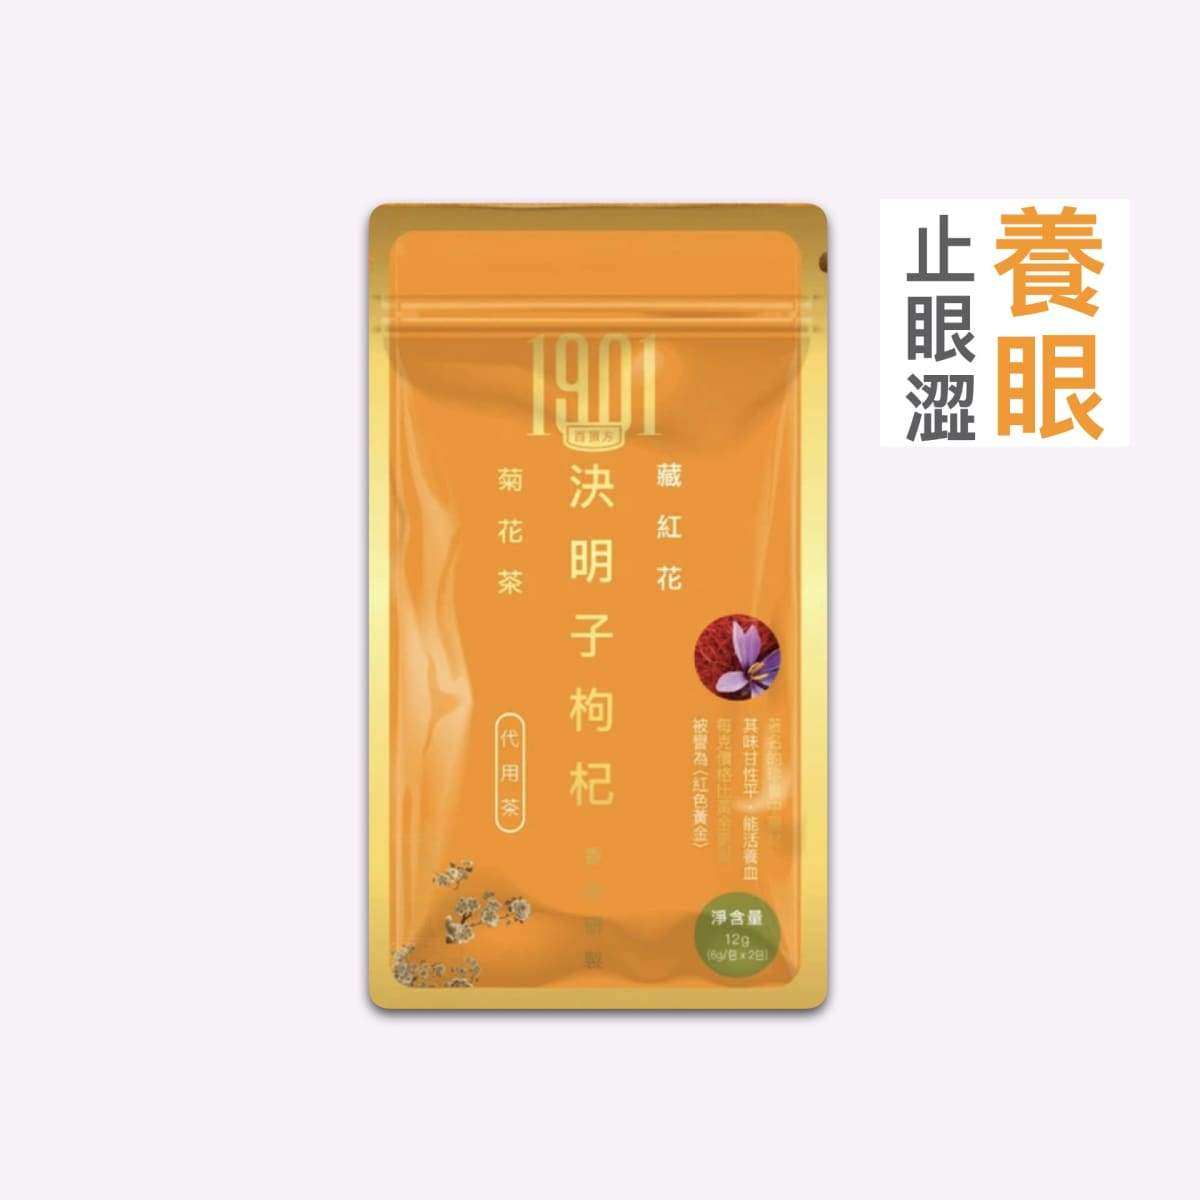 養眼茶療 - 決明子枸杞菊花茶 Functional Tea 1901 1包 